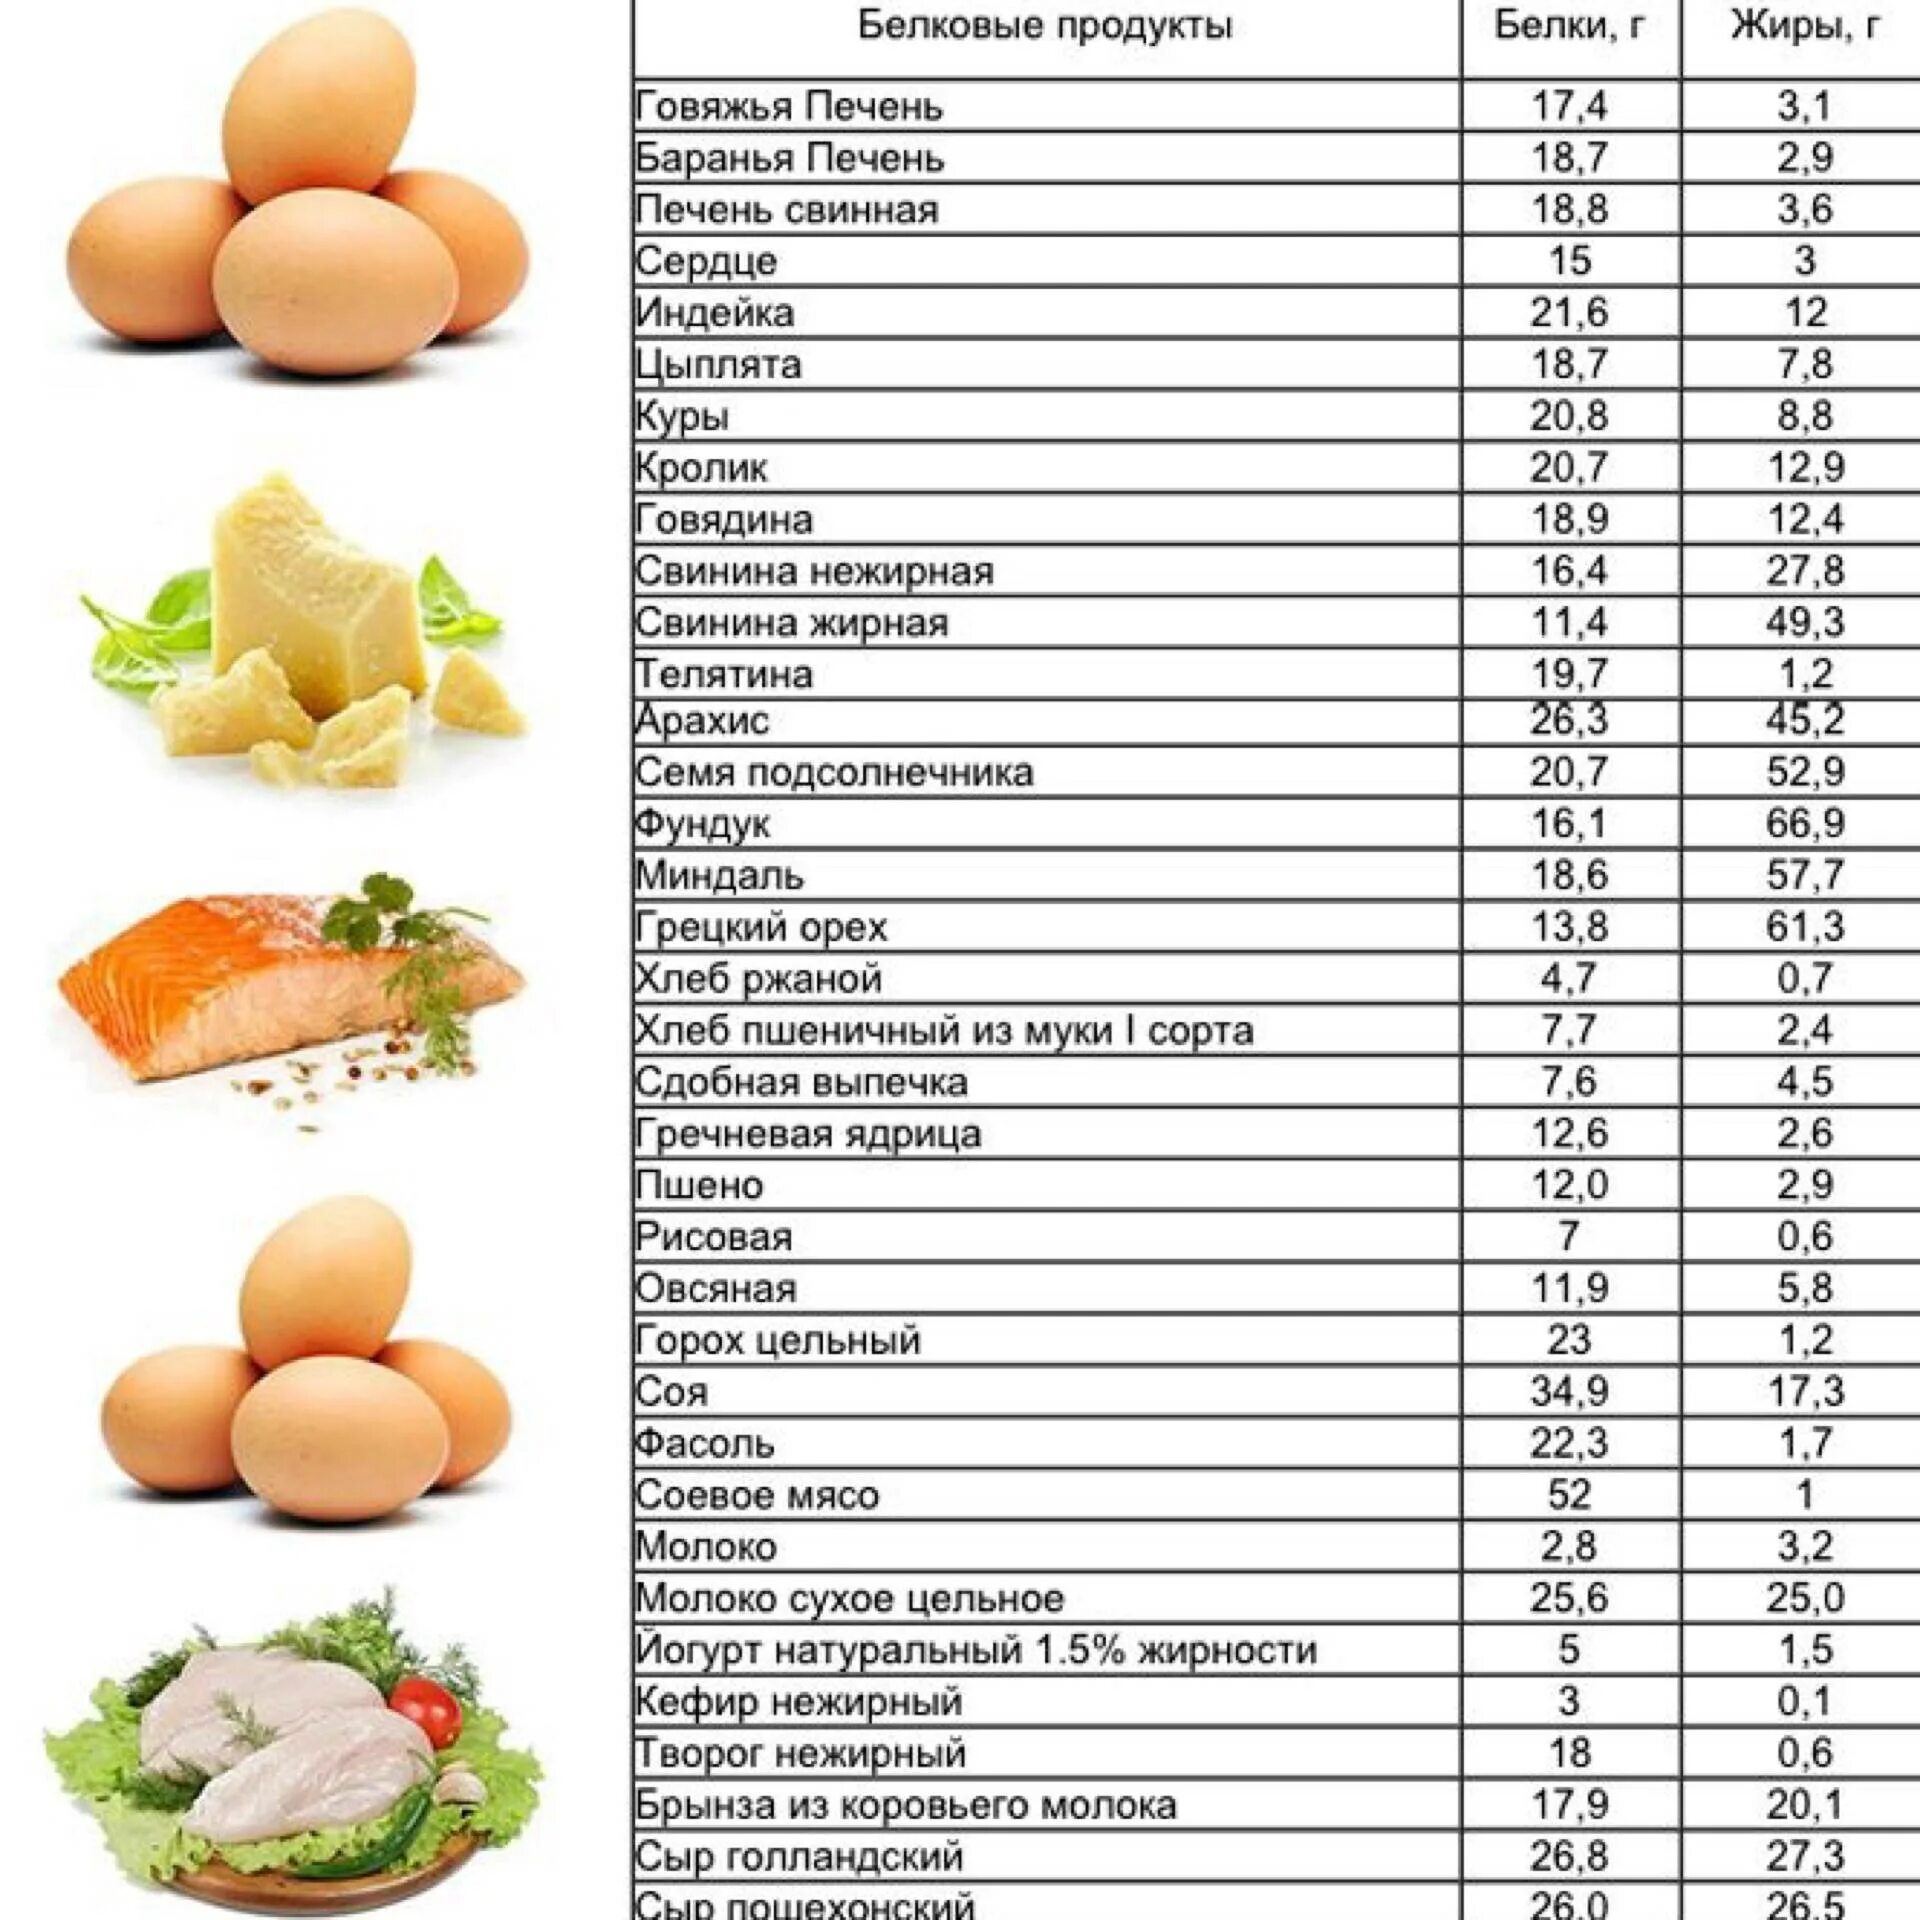 В овощах есть белки. Продукты содержащие белок для похудения таблица список продуктов. Продукты богатые белком для похудения таблица список. Продукты богатые белком для похудения таблица список и блюда. Продукты богатые белком список продуктов таблица.